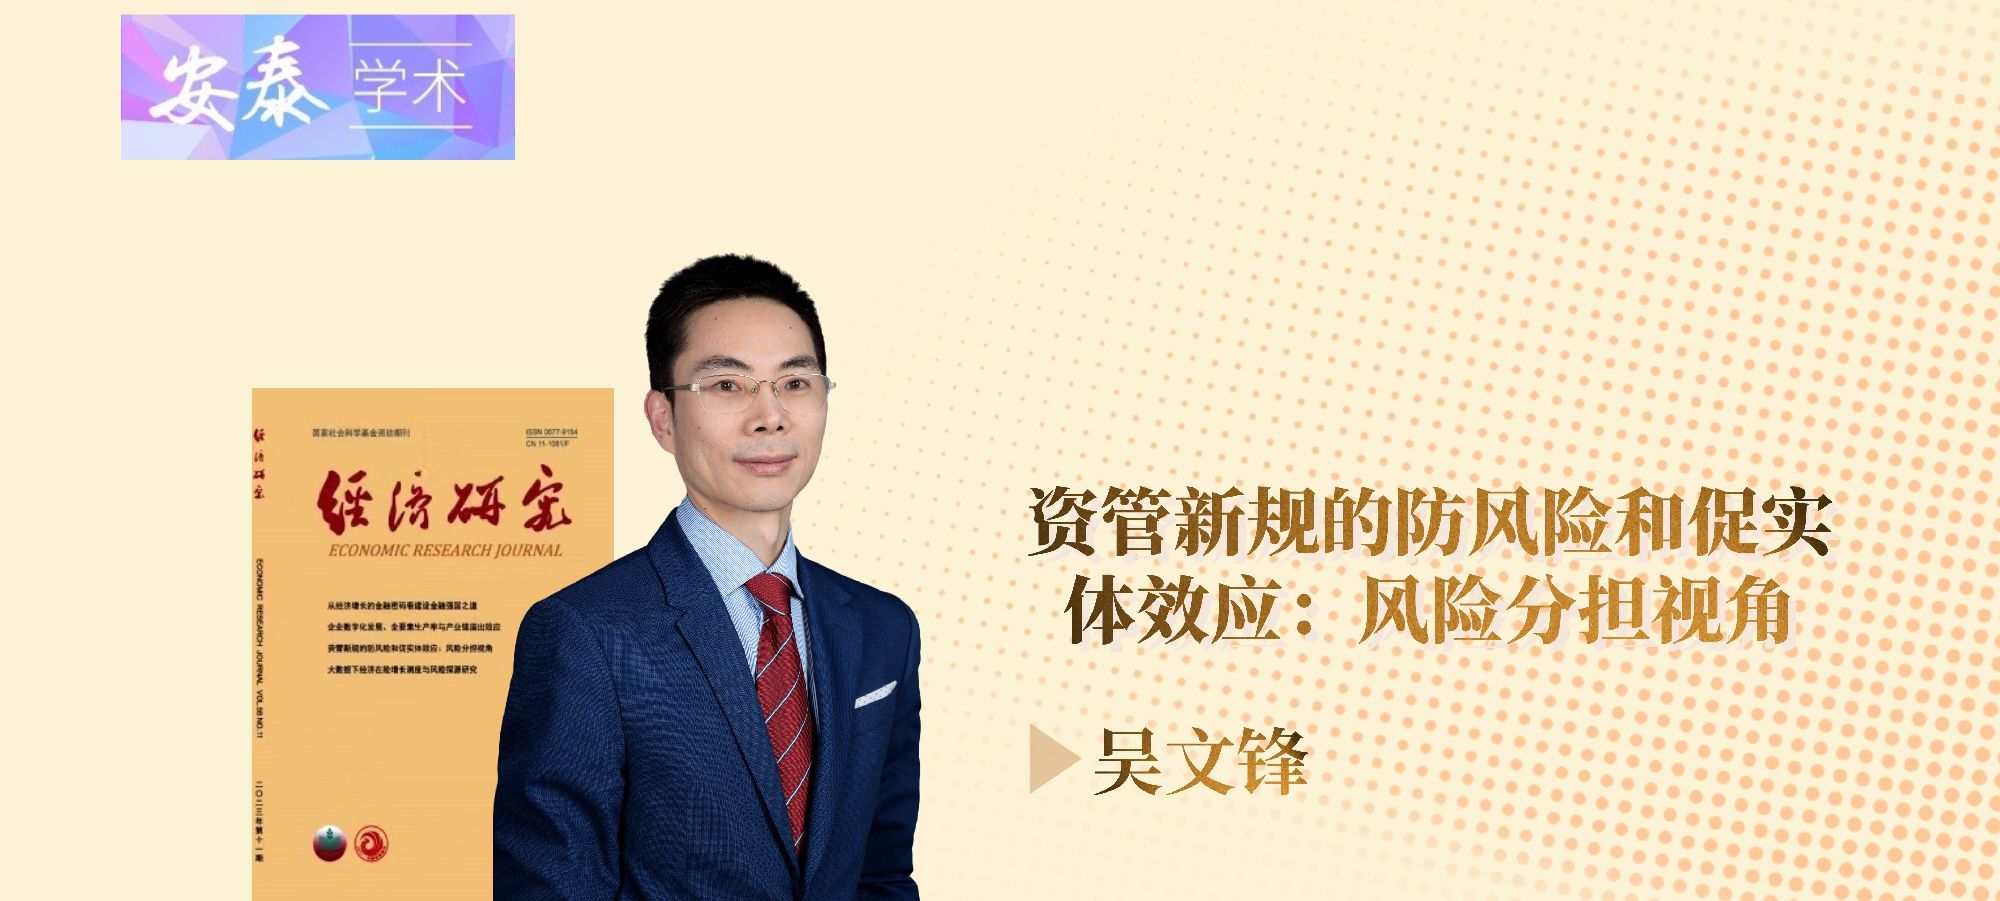 上海交通大学安泰经管学院吴文锋教授在《经济研究》发表学术论文